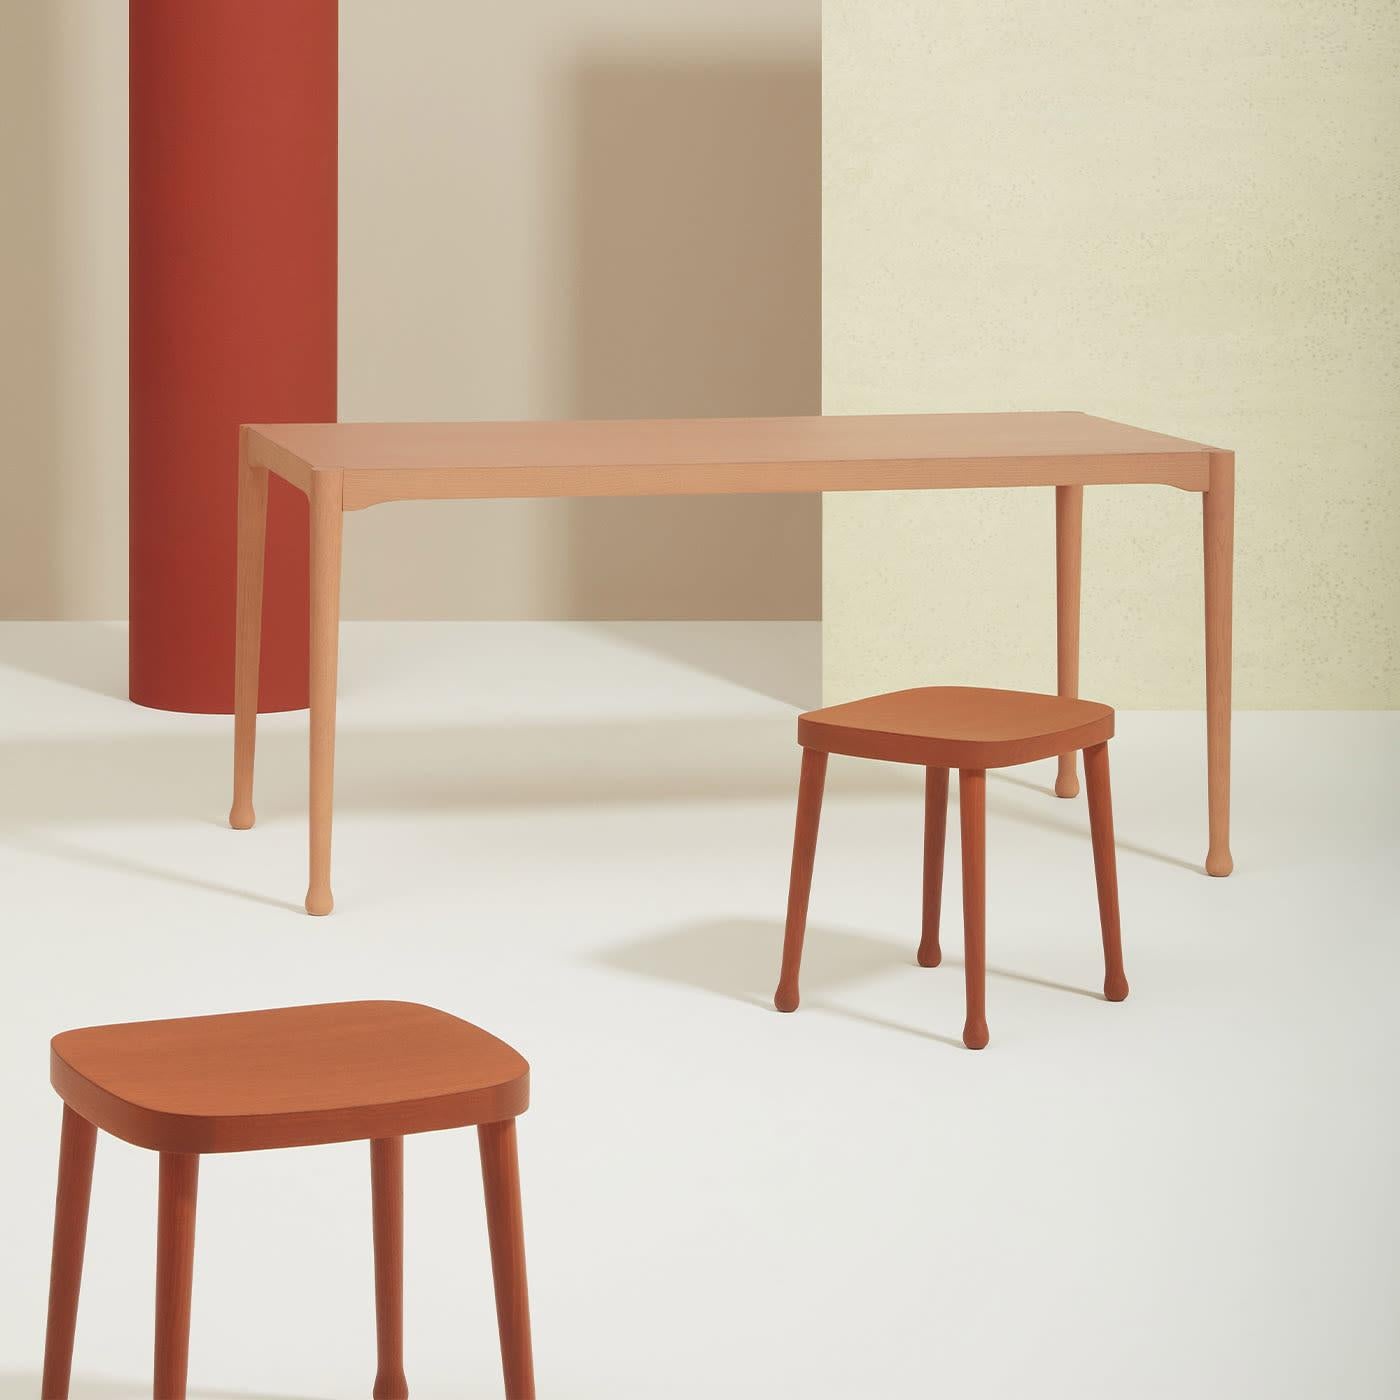 Das klare und minimalistische Design von Cristina Celestino macht diesen vielseitigen Esstisch zu einer perfekten Ergänzung für jeden Einrichtungsstil. Er ist in einem warmen, erdigen Pastellton lackiert und wird in Handarbeit aus Eschenholz